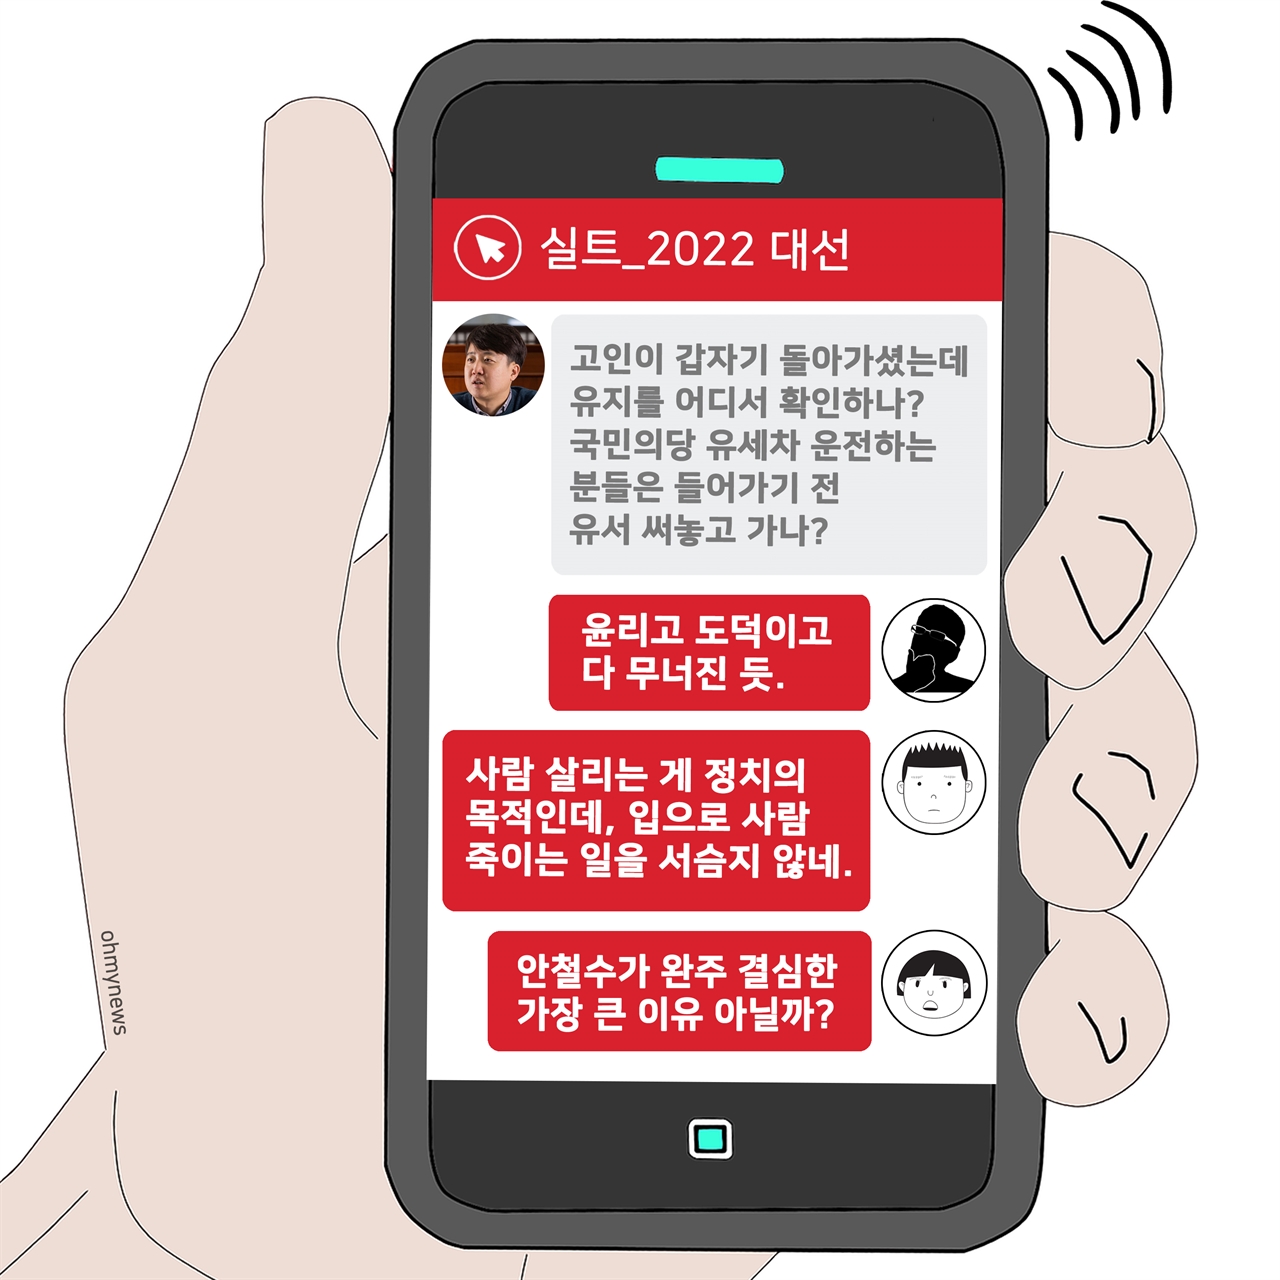 [실트_2022 대선] 이준석 '고인 유지' 발언에 누리꾼 '부적절 언행' 지적